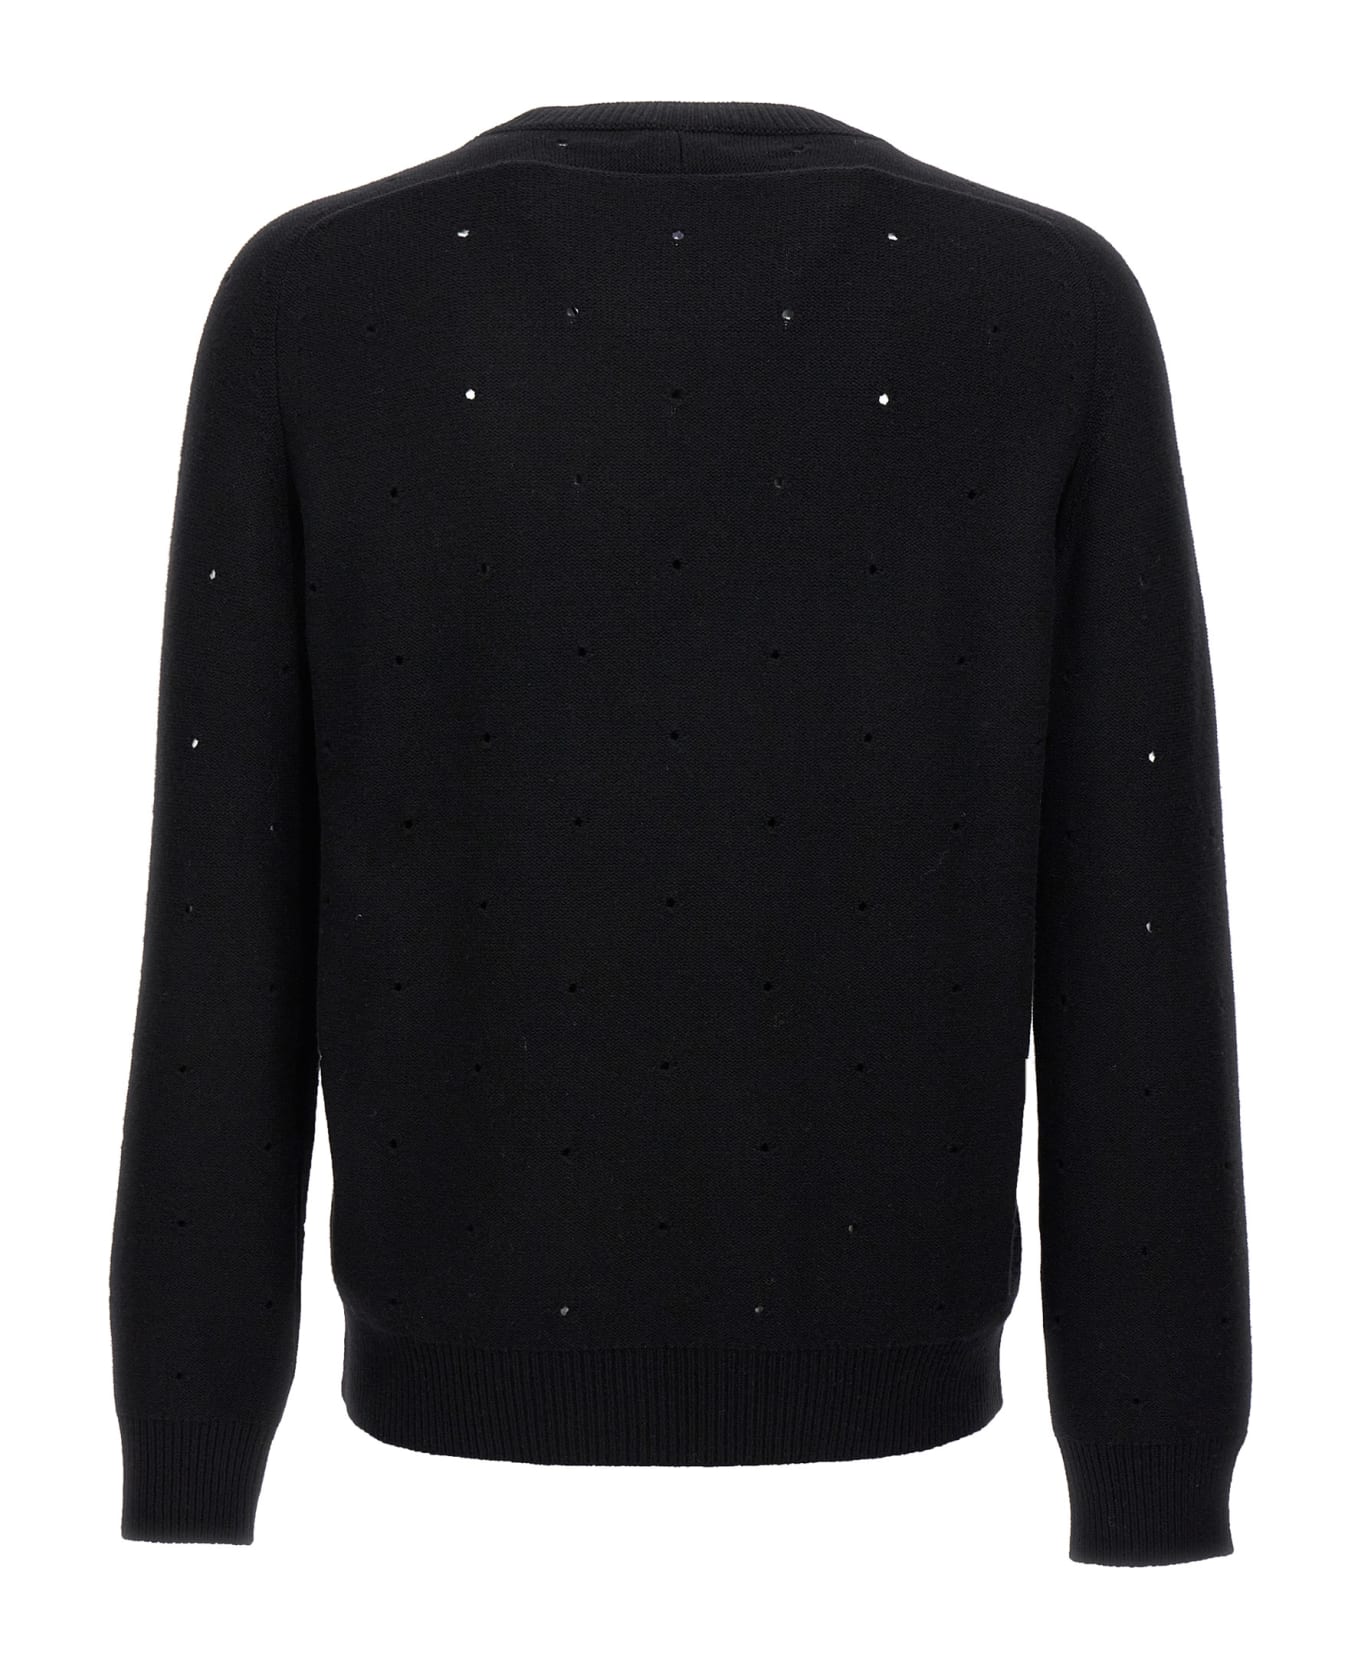 Saint Laurent Openwork Sweater - Black  